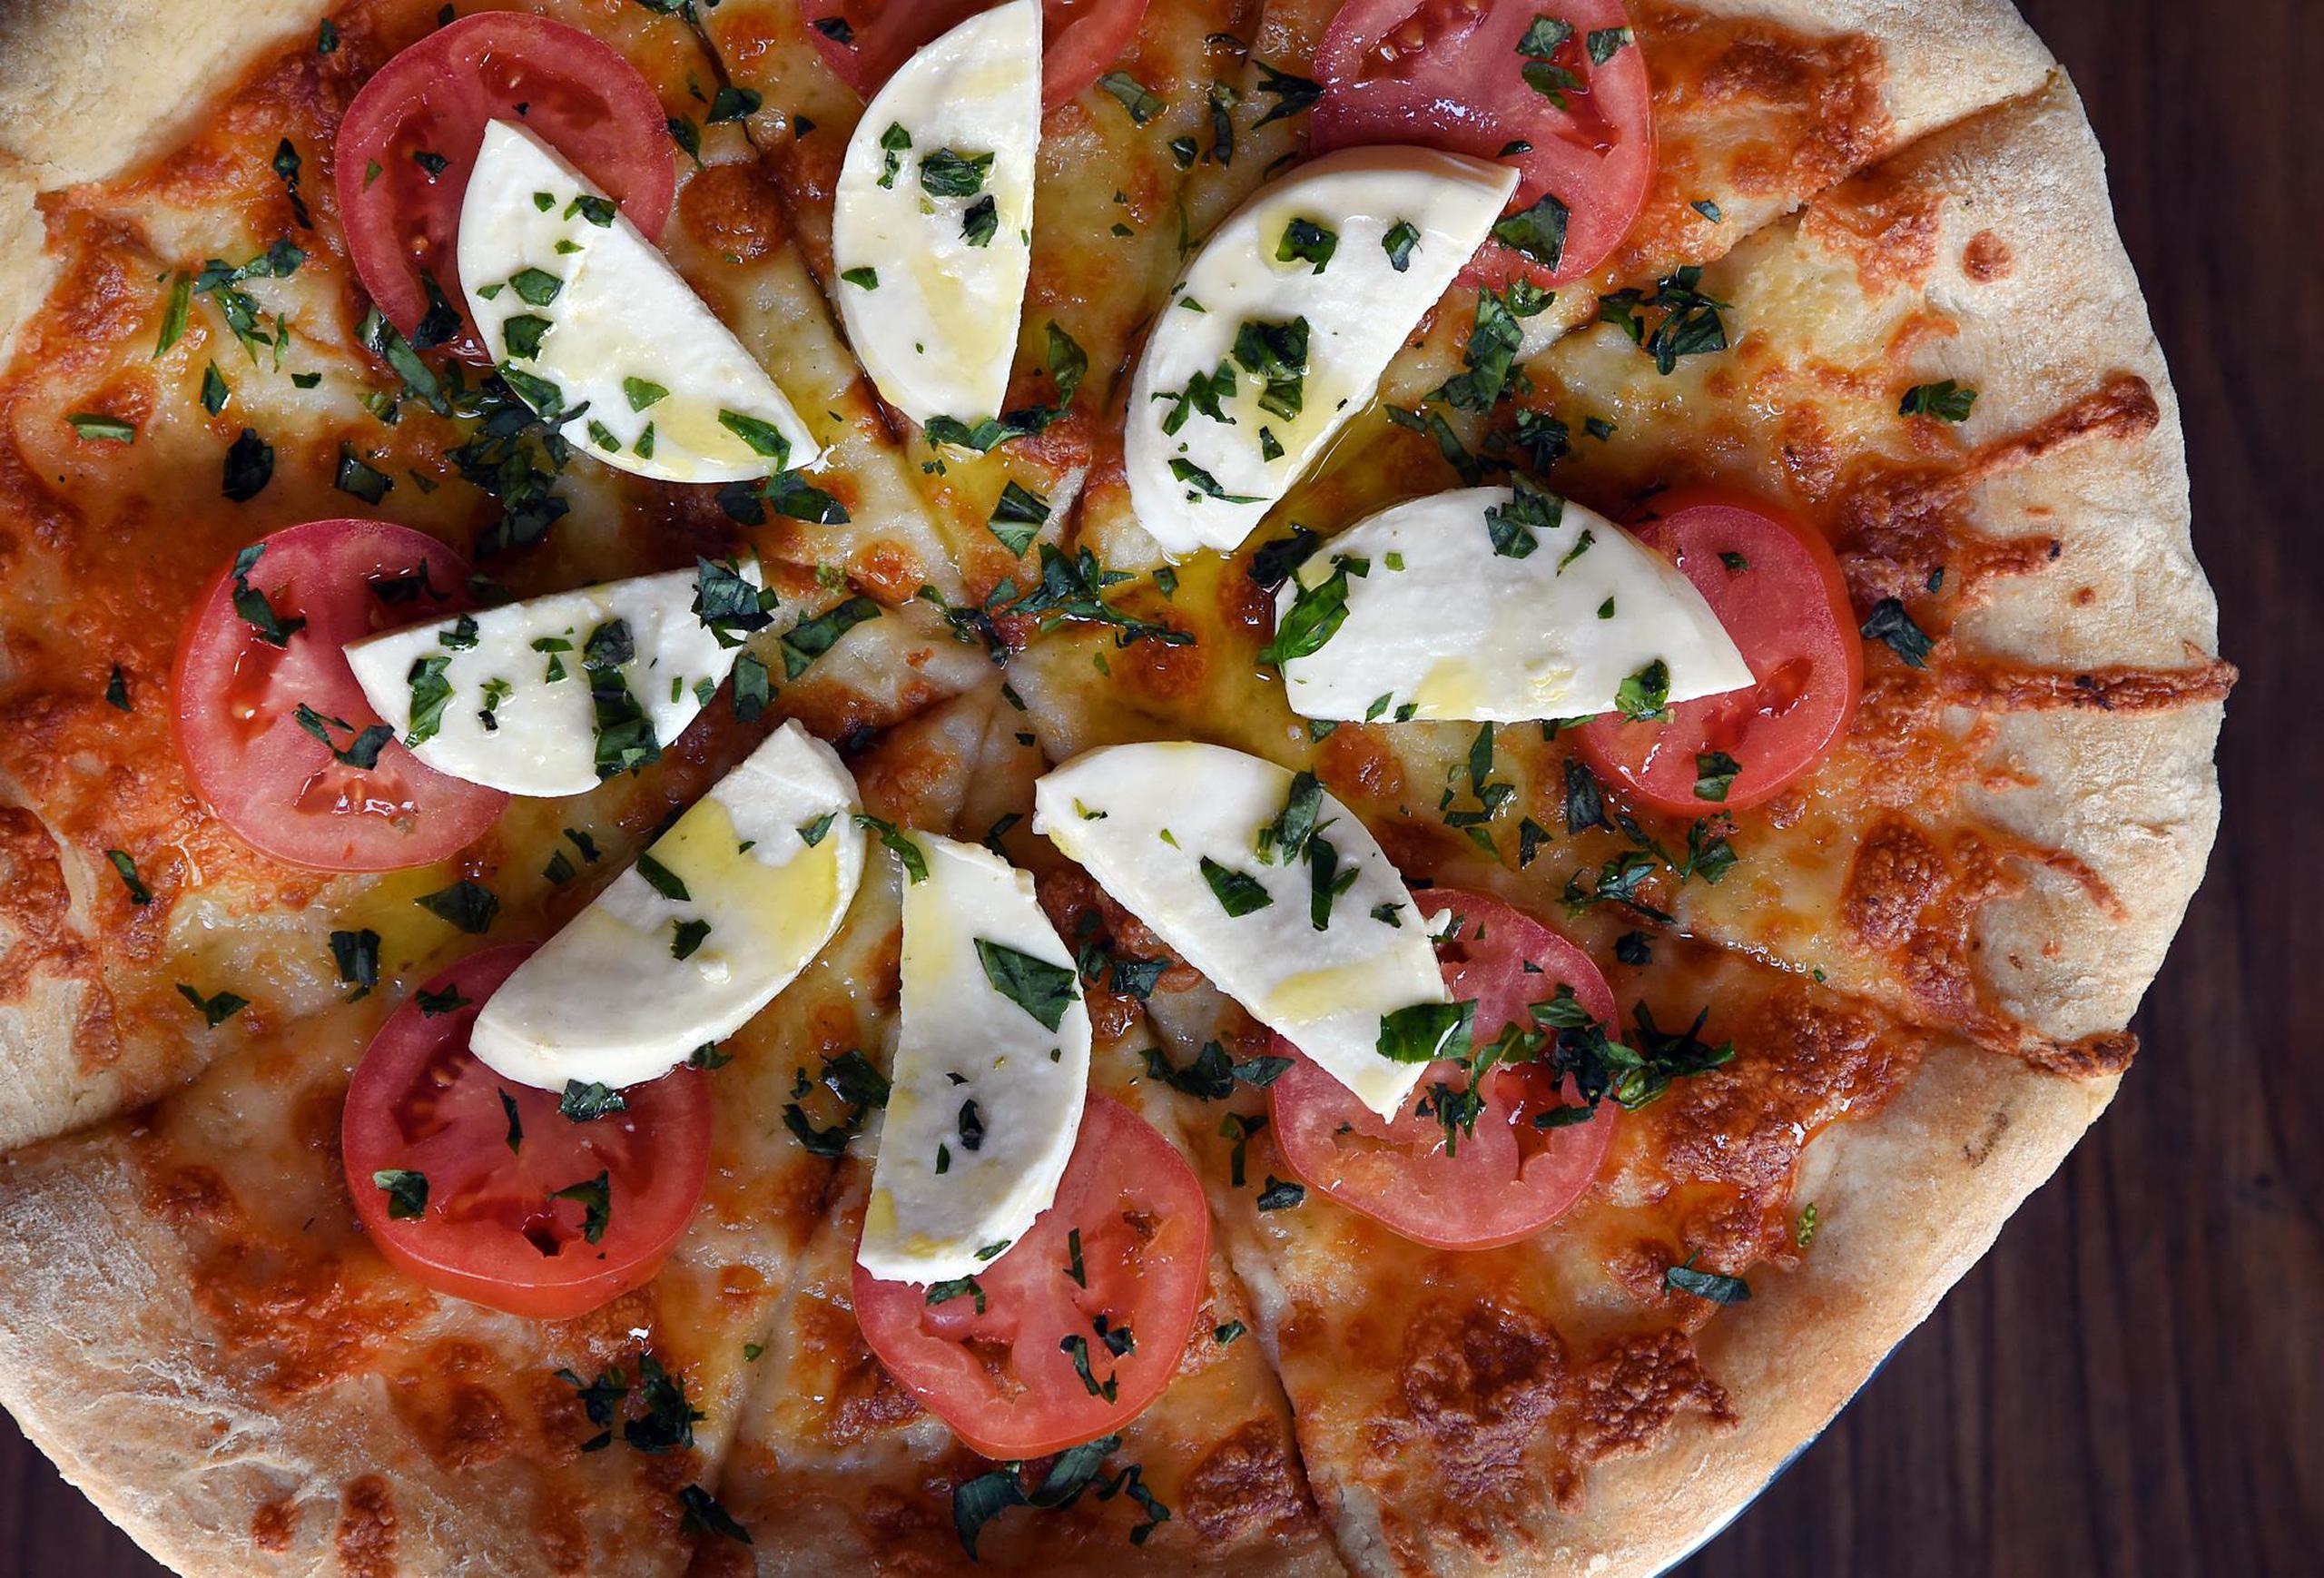 La Capresse es una de las pizzas italianas clásicas, preparadas con salsa de tomate fresca, queso mozzarella y albahaca.